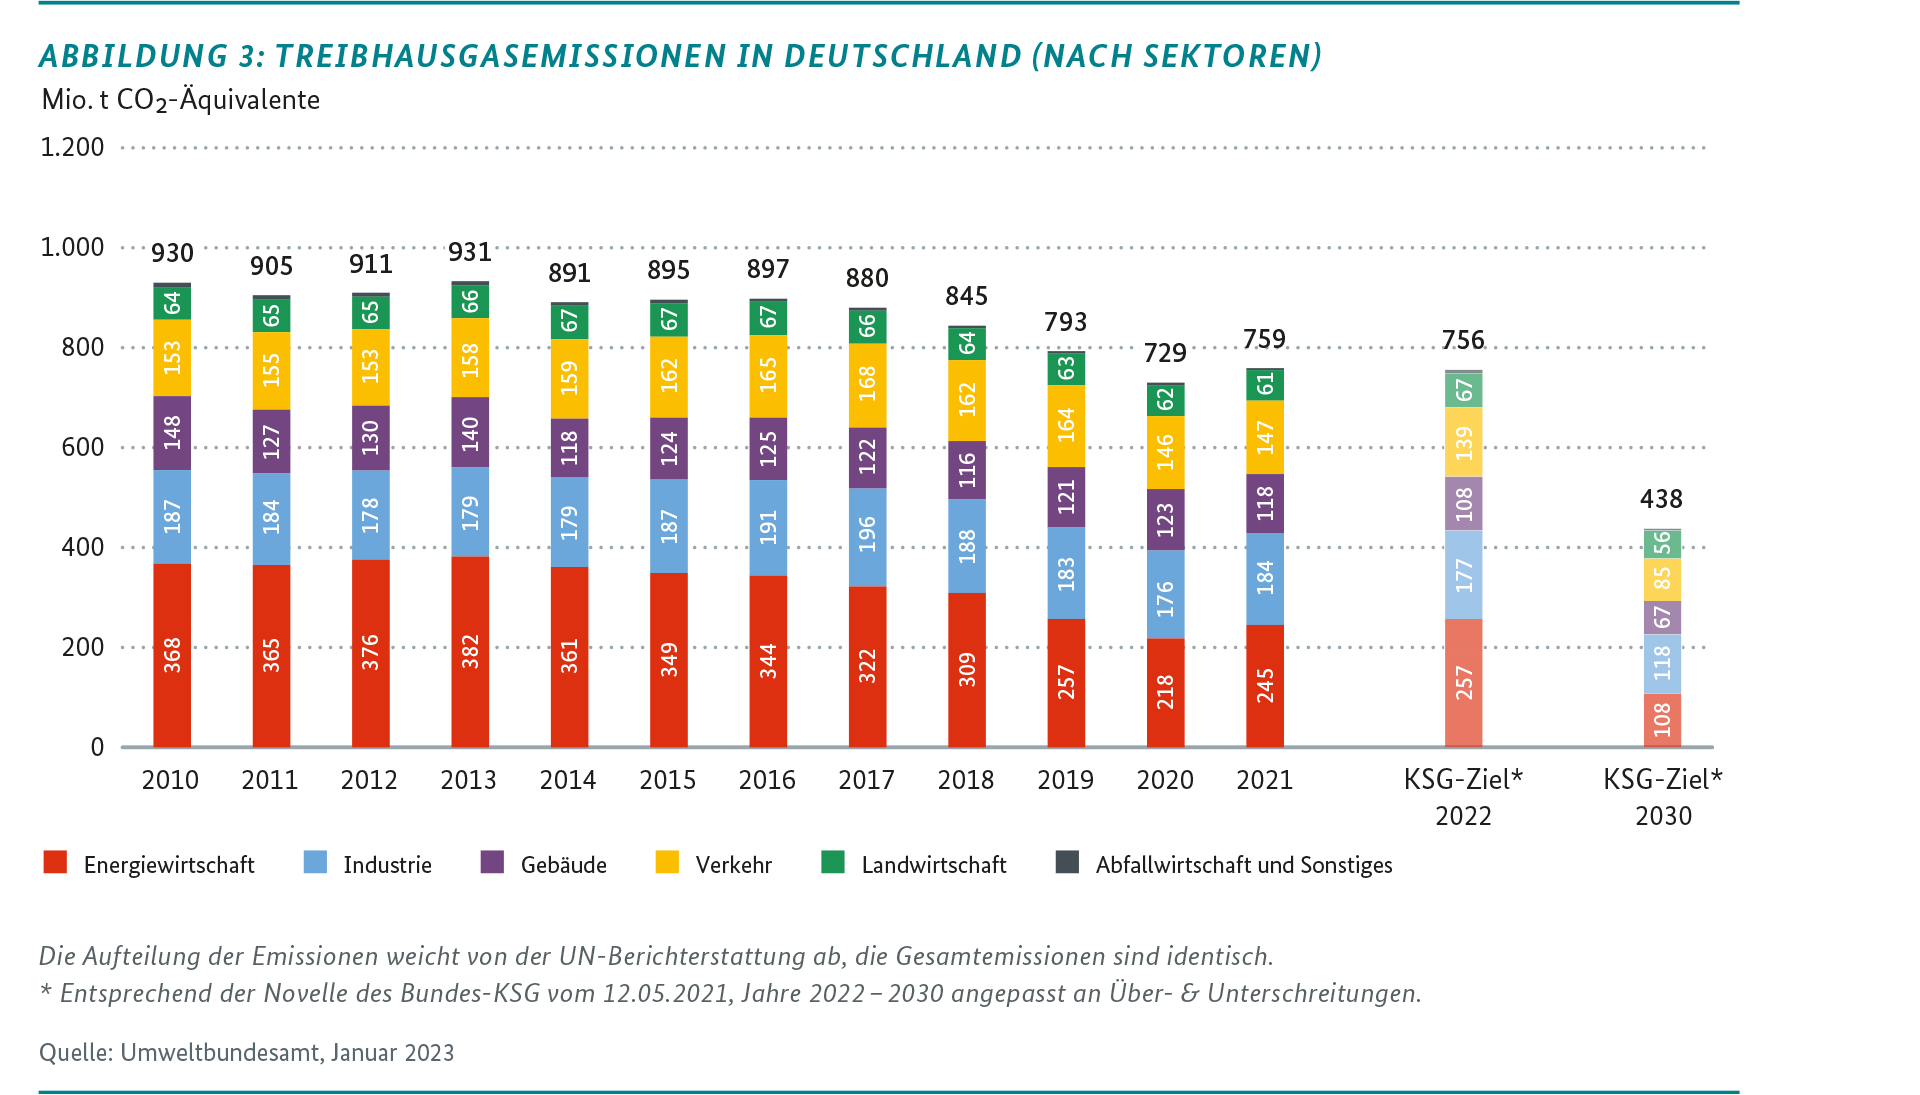 Abbildung mit Treibhausgasemissionen in Deutschland (nach Sektoren)